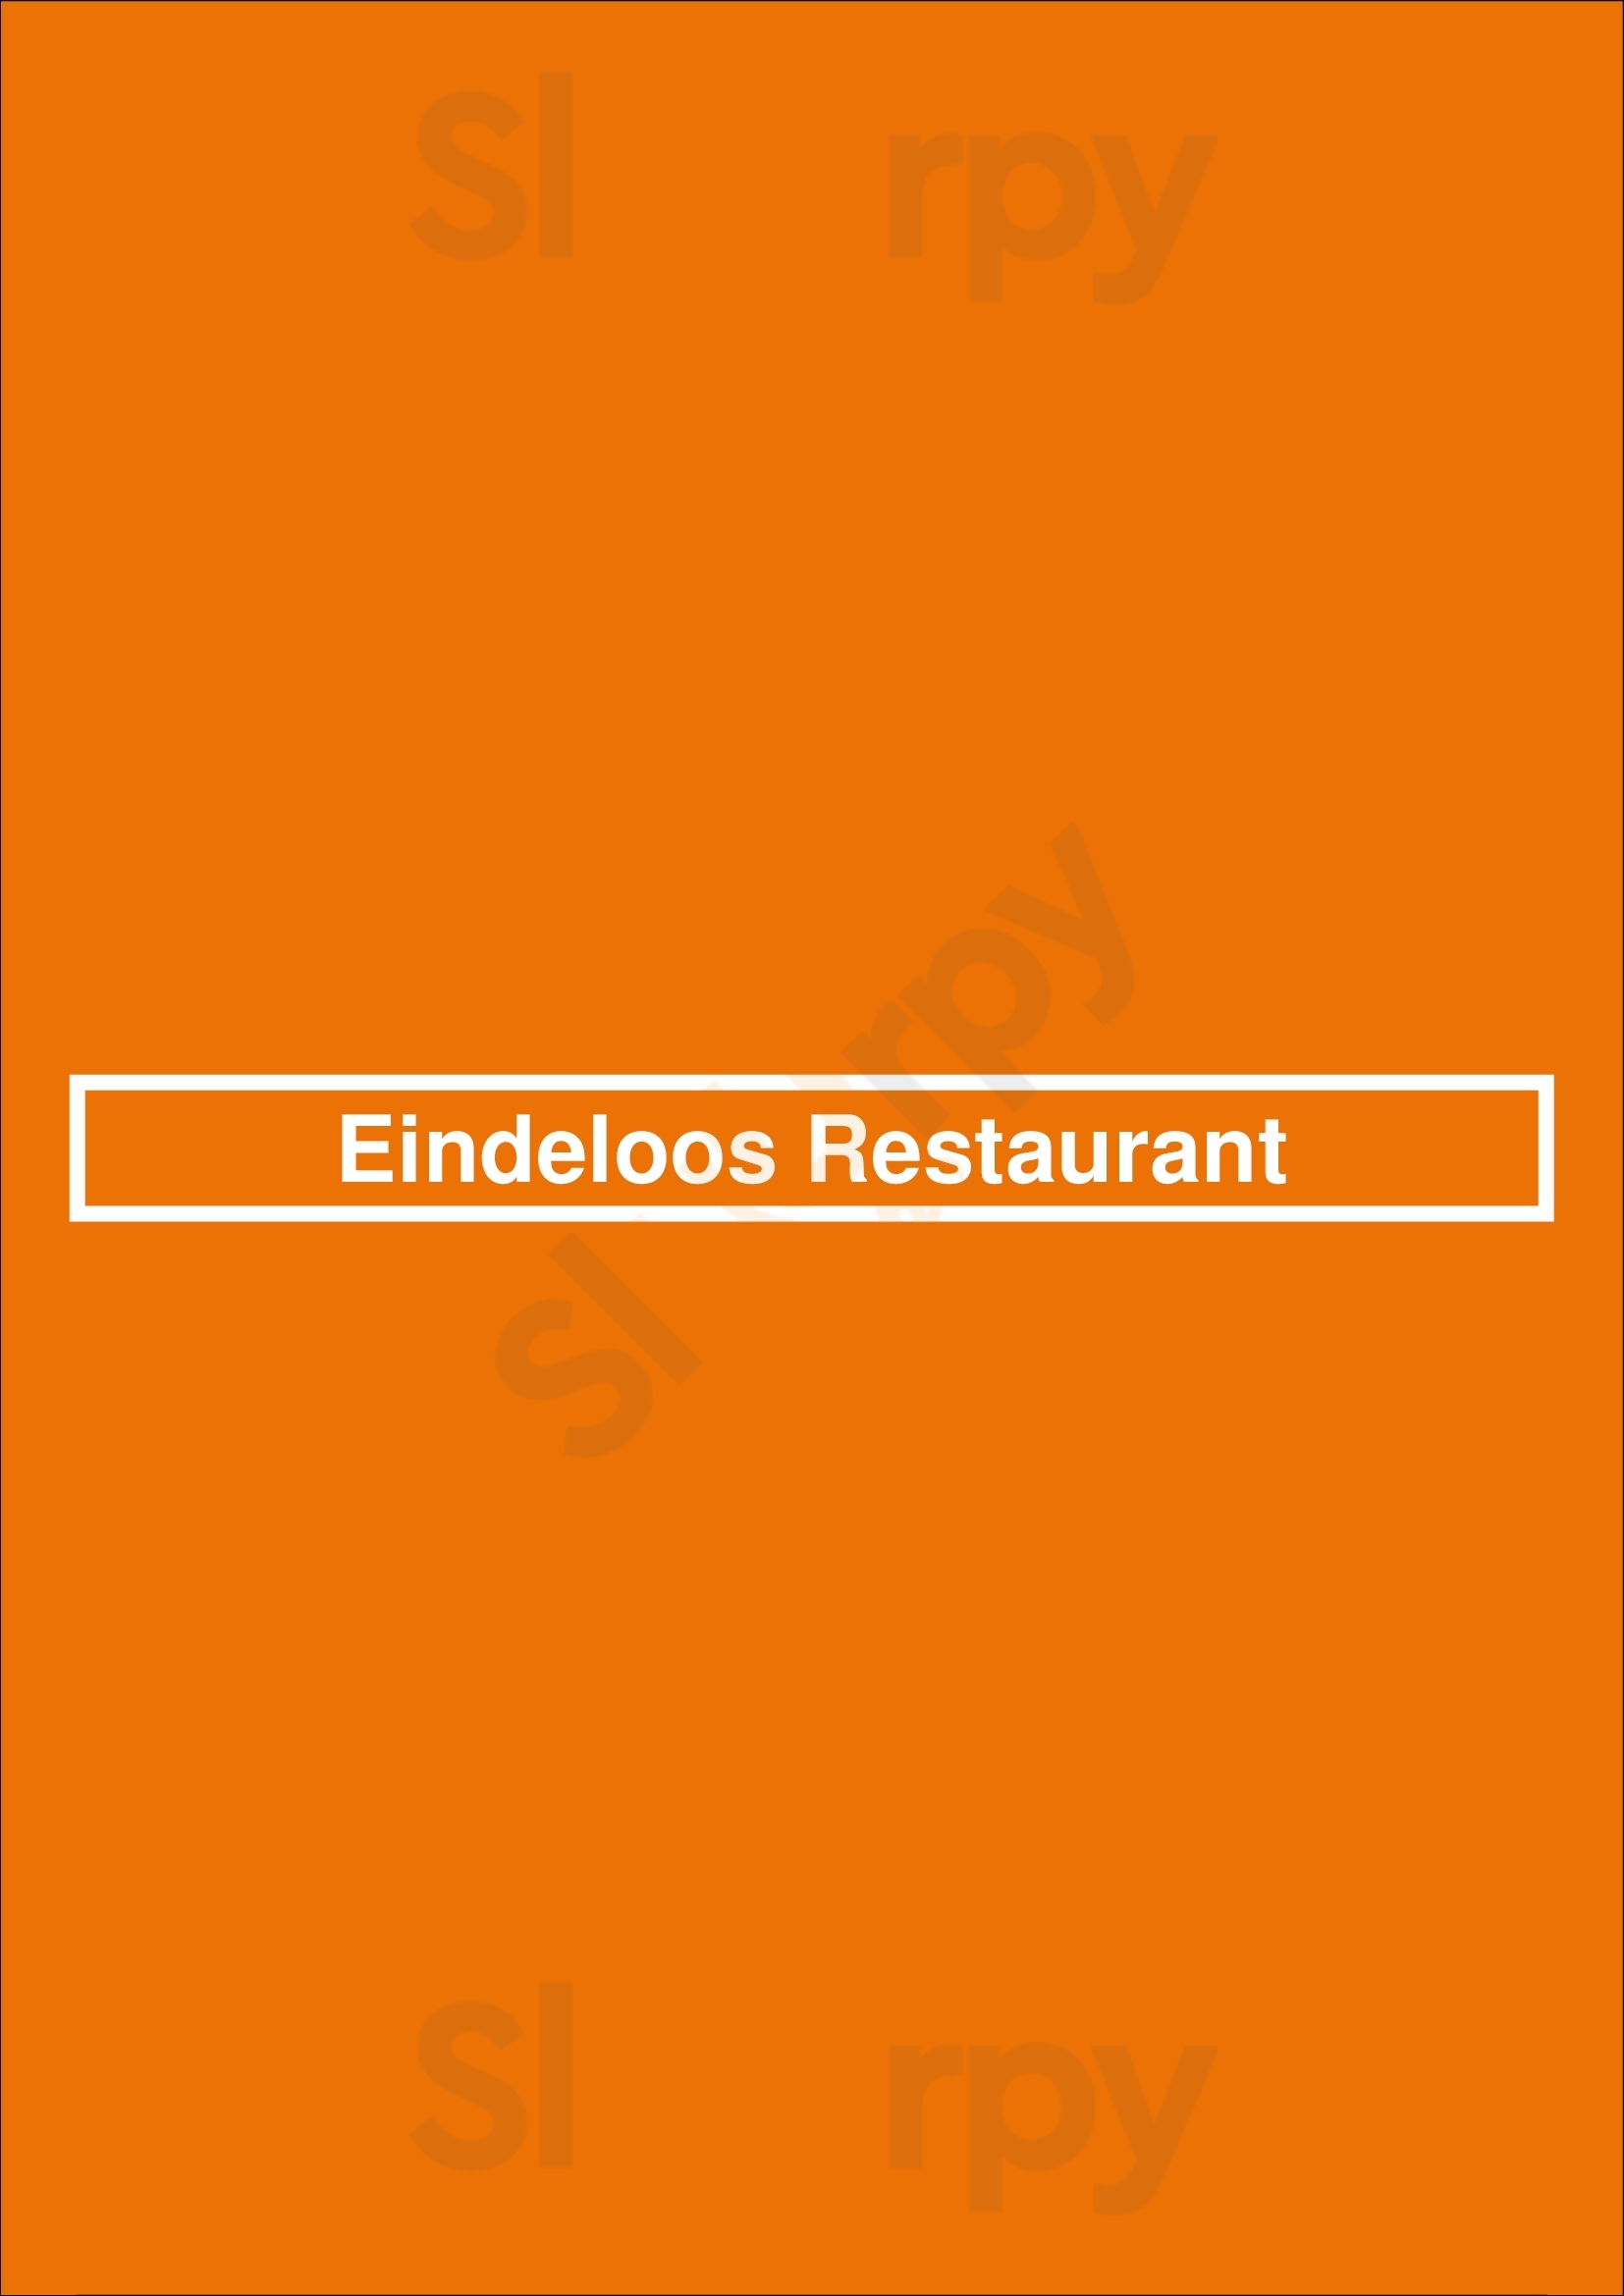 Eindeloos Restaurant Leeuwarden Menu - 1